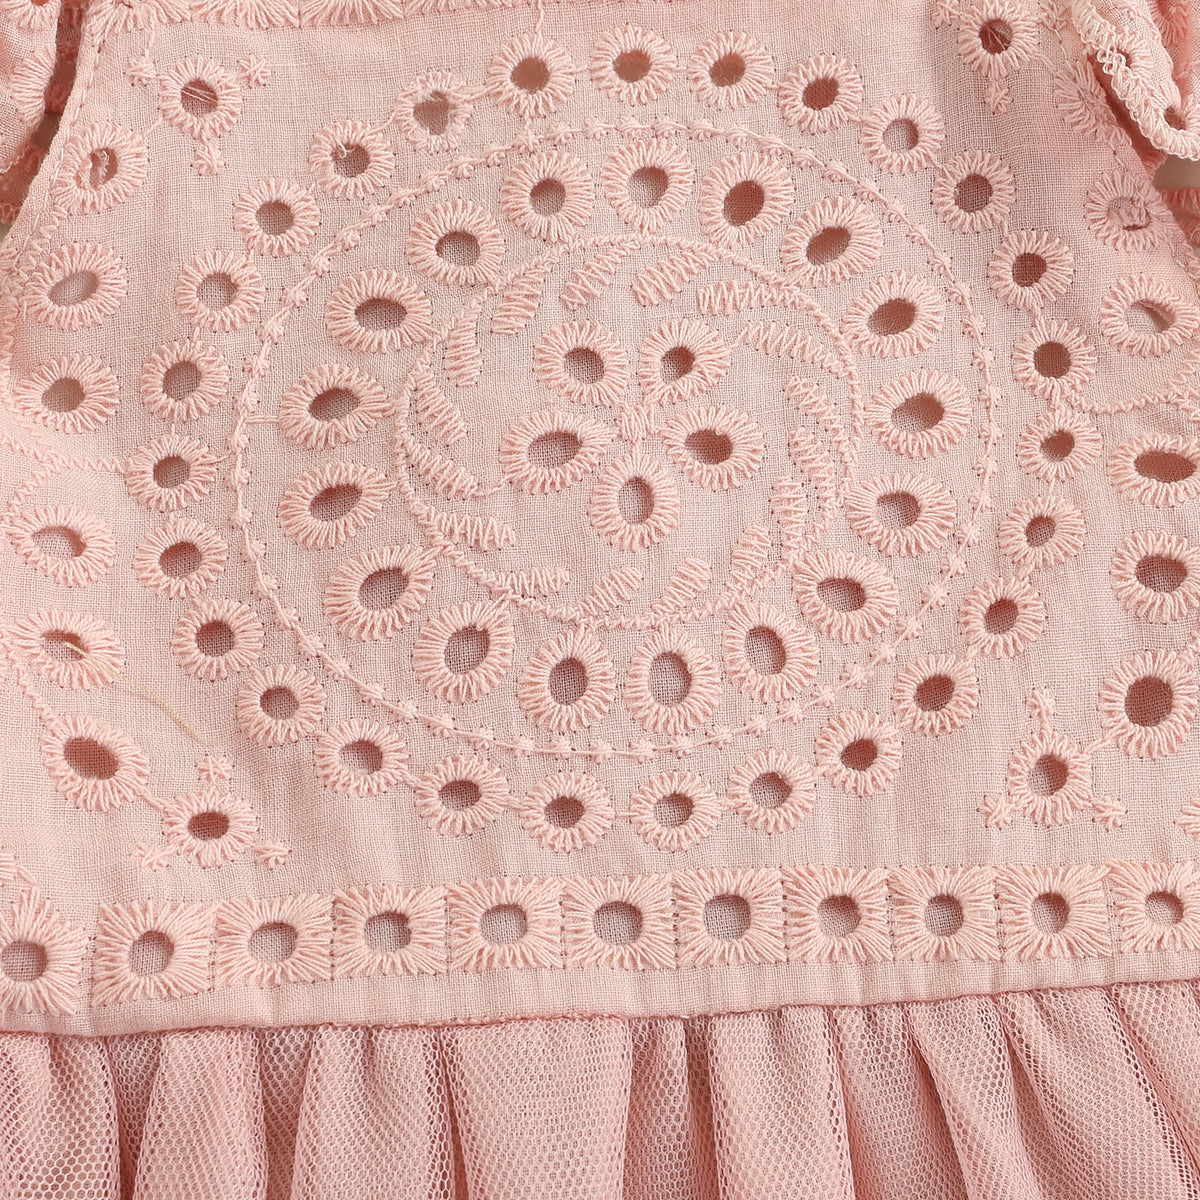 Fantasy Flutter Dress | Pink